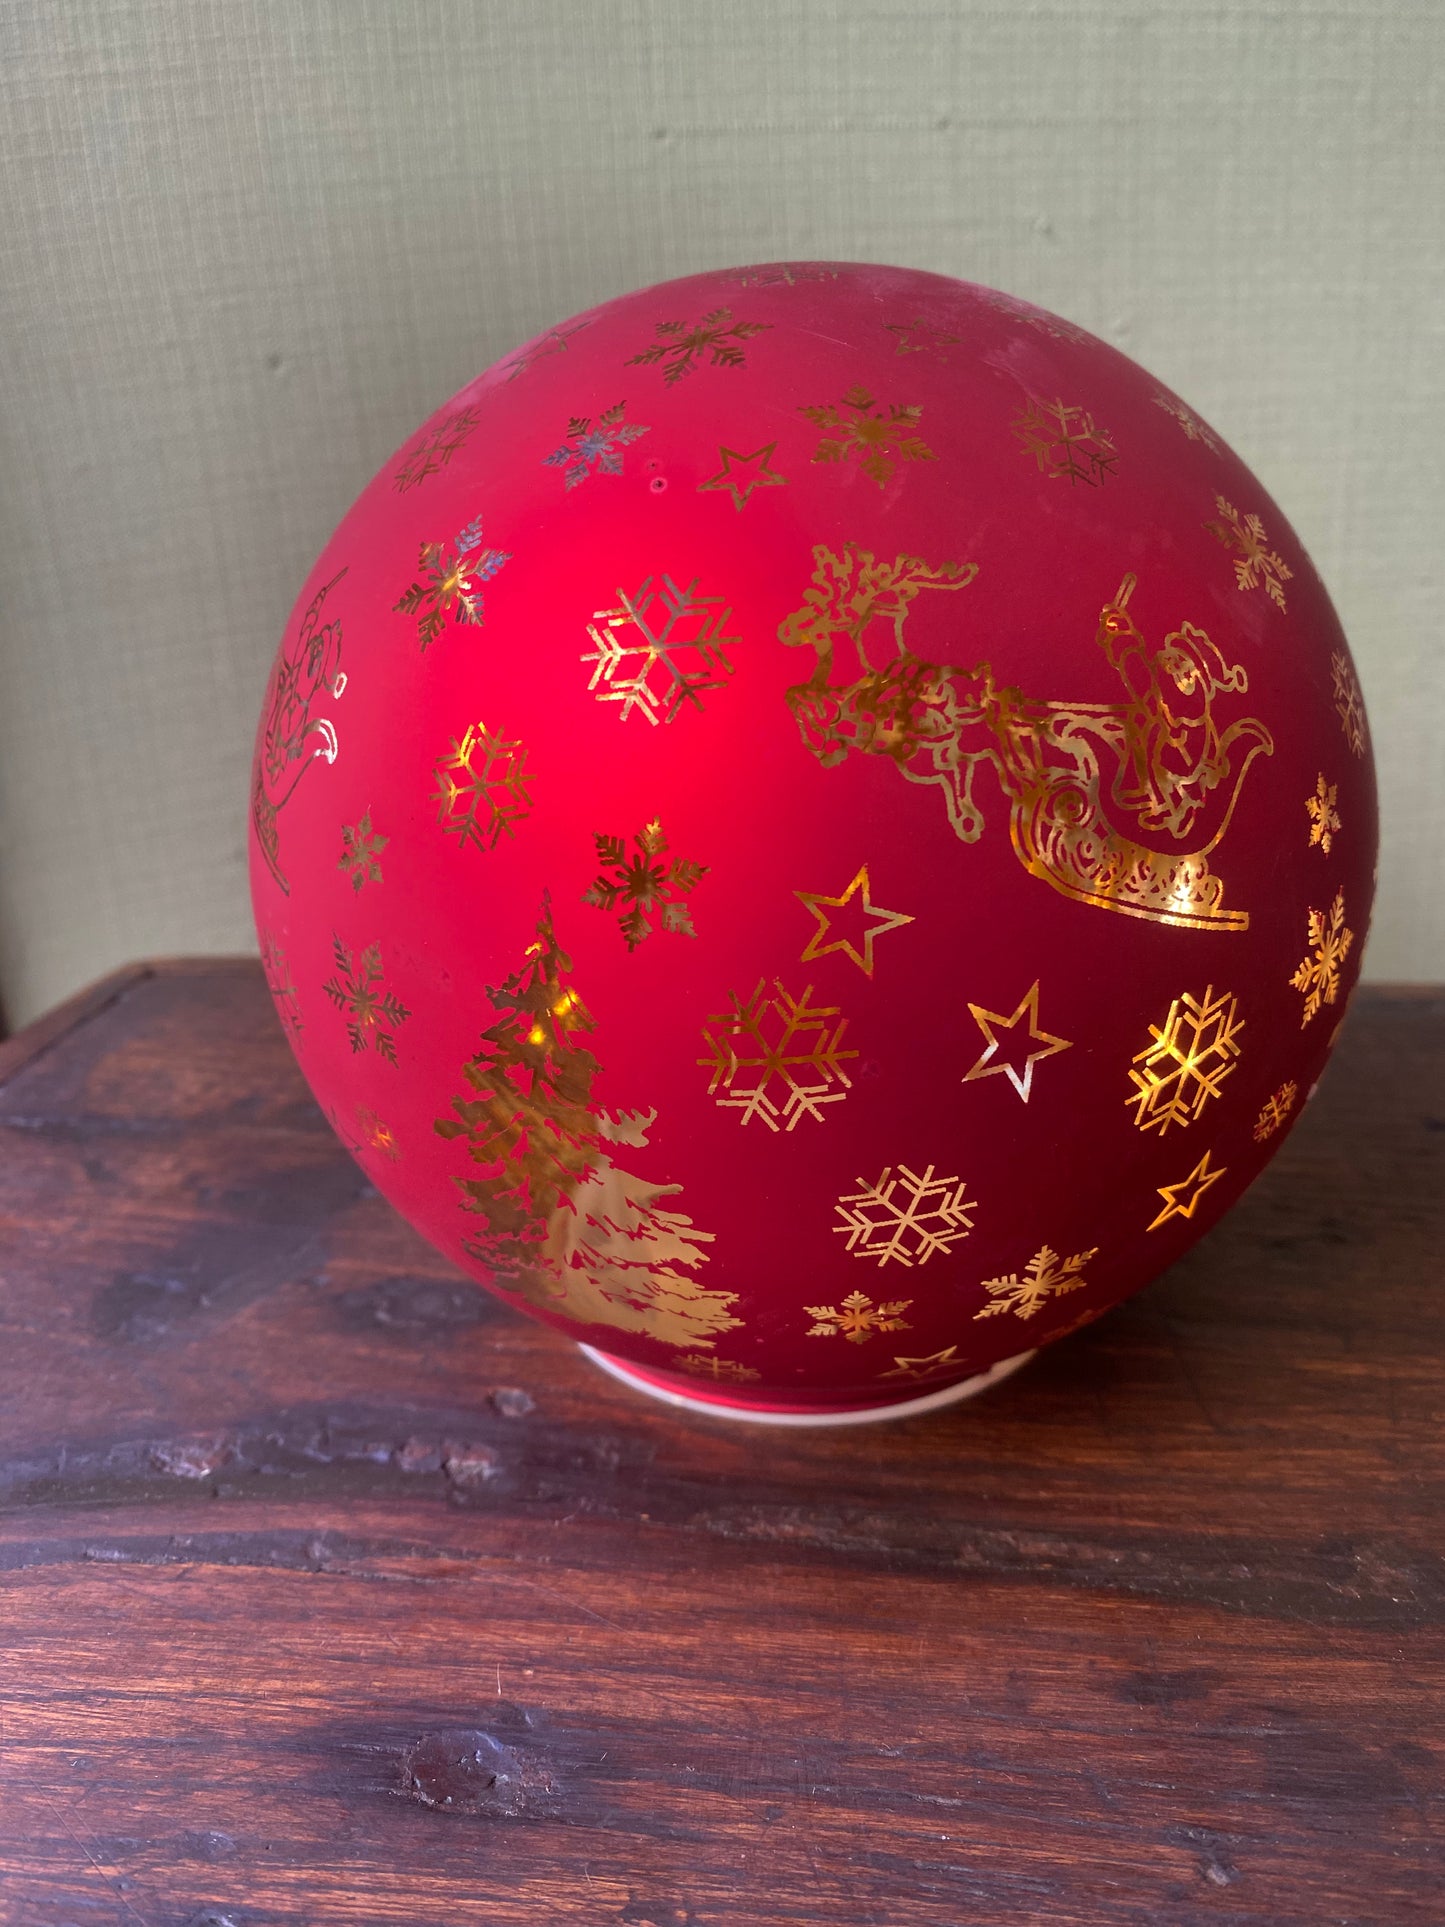 Medium lightable red sphere